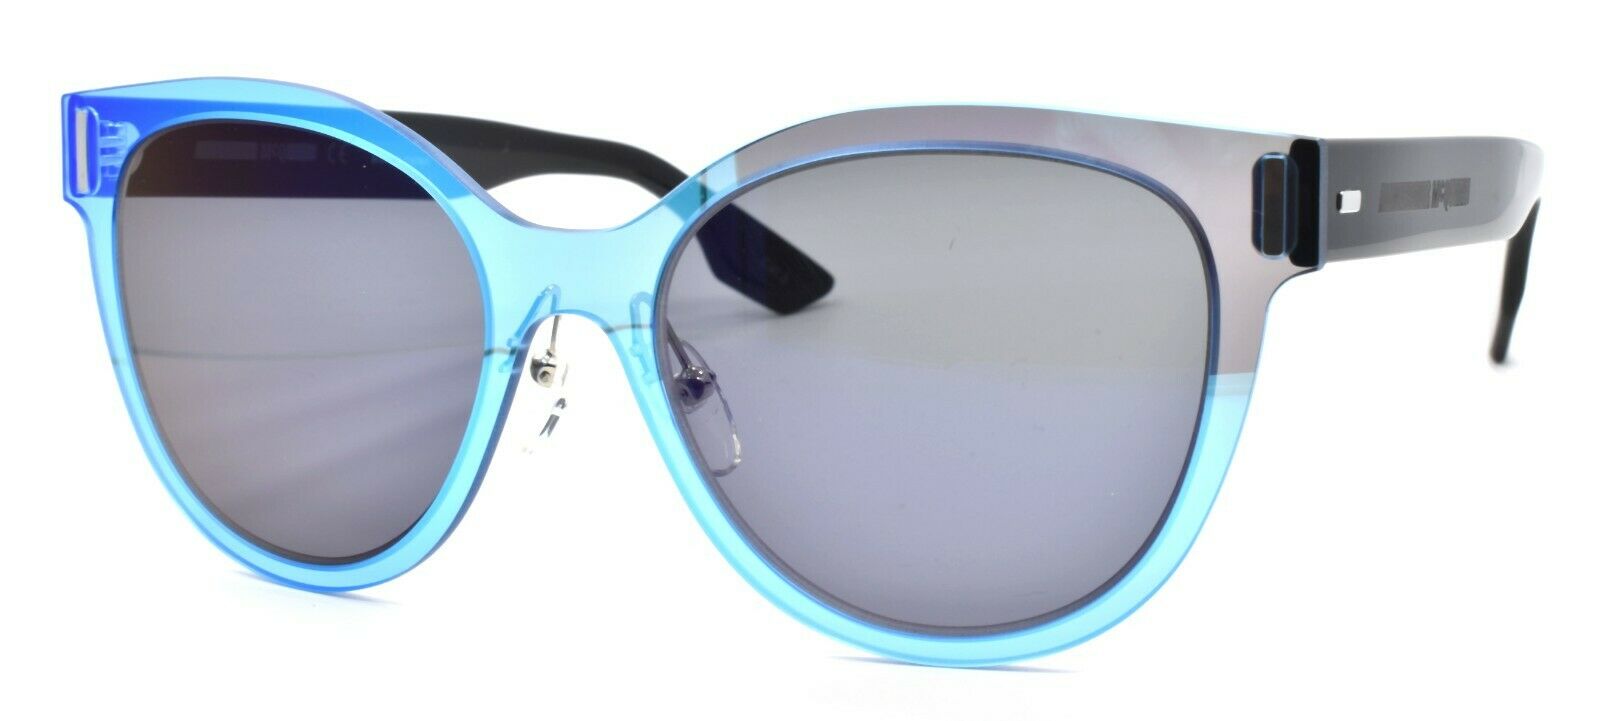 1-McQ Alexander McQueen MQ0023S 003 Women's Sunglasses Cat-eye Blue & Black / Blue-889652010632-IKSpecs